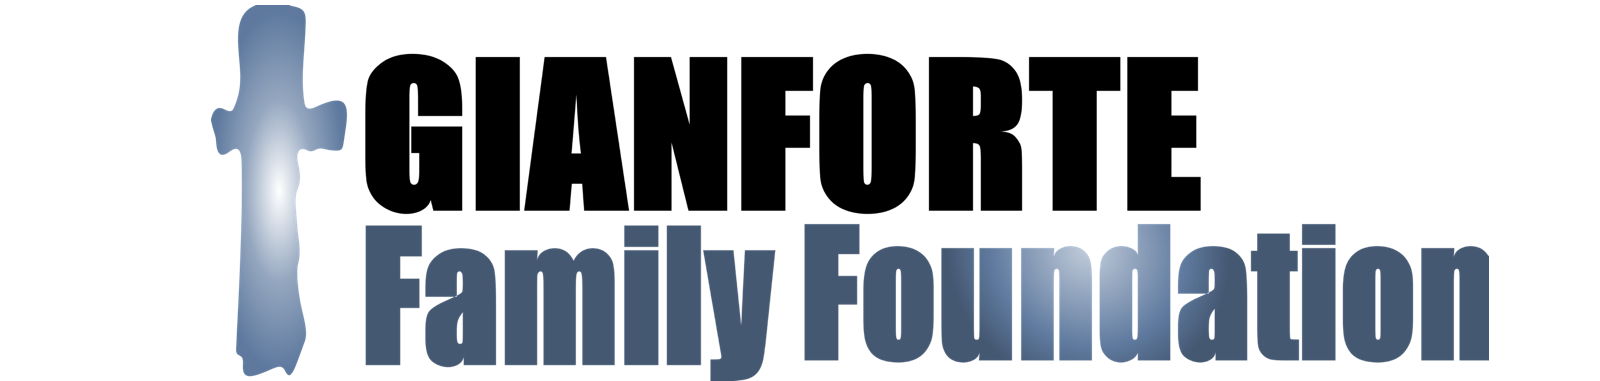 Gianforte Family Foundation